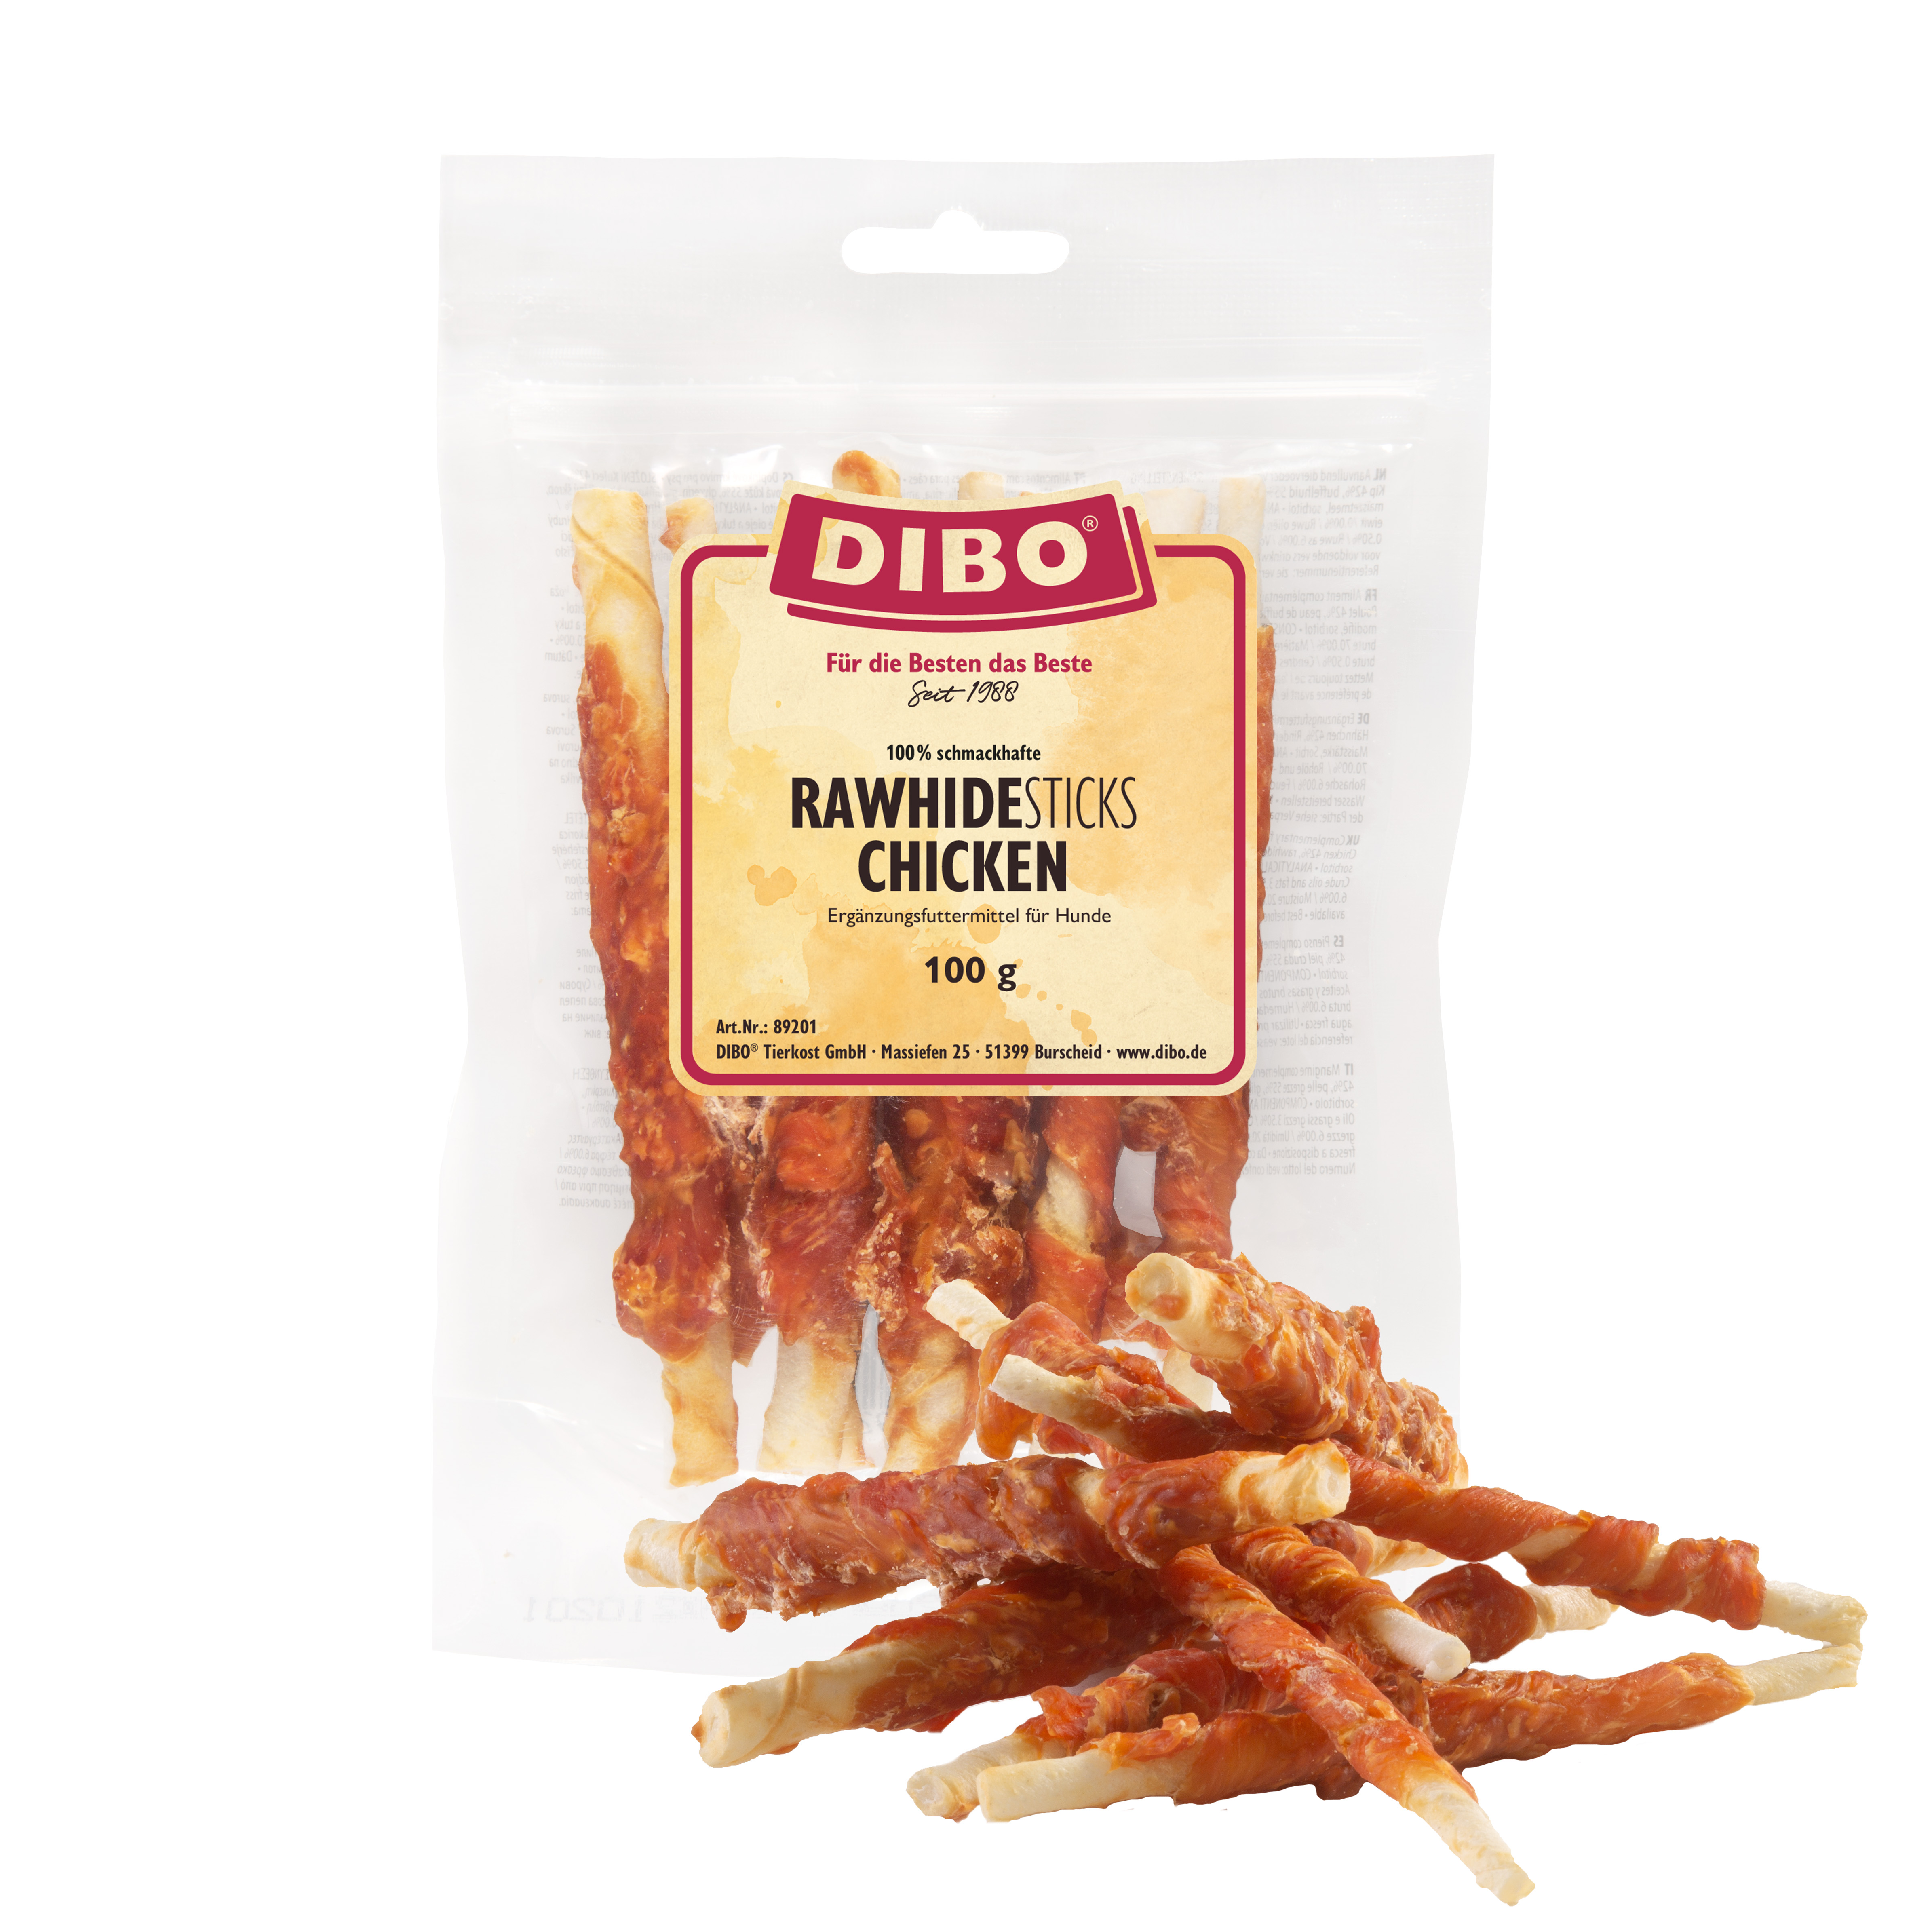 DIBO RawHide Sticks Chicken, 100g-Beutel